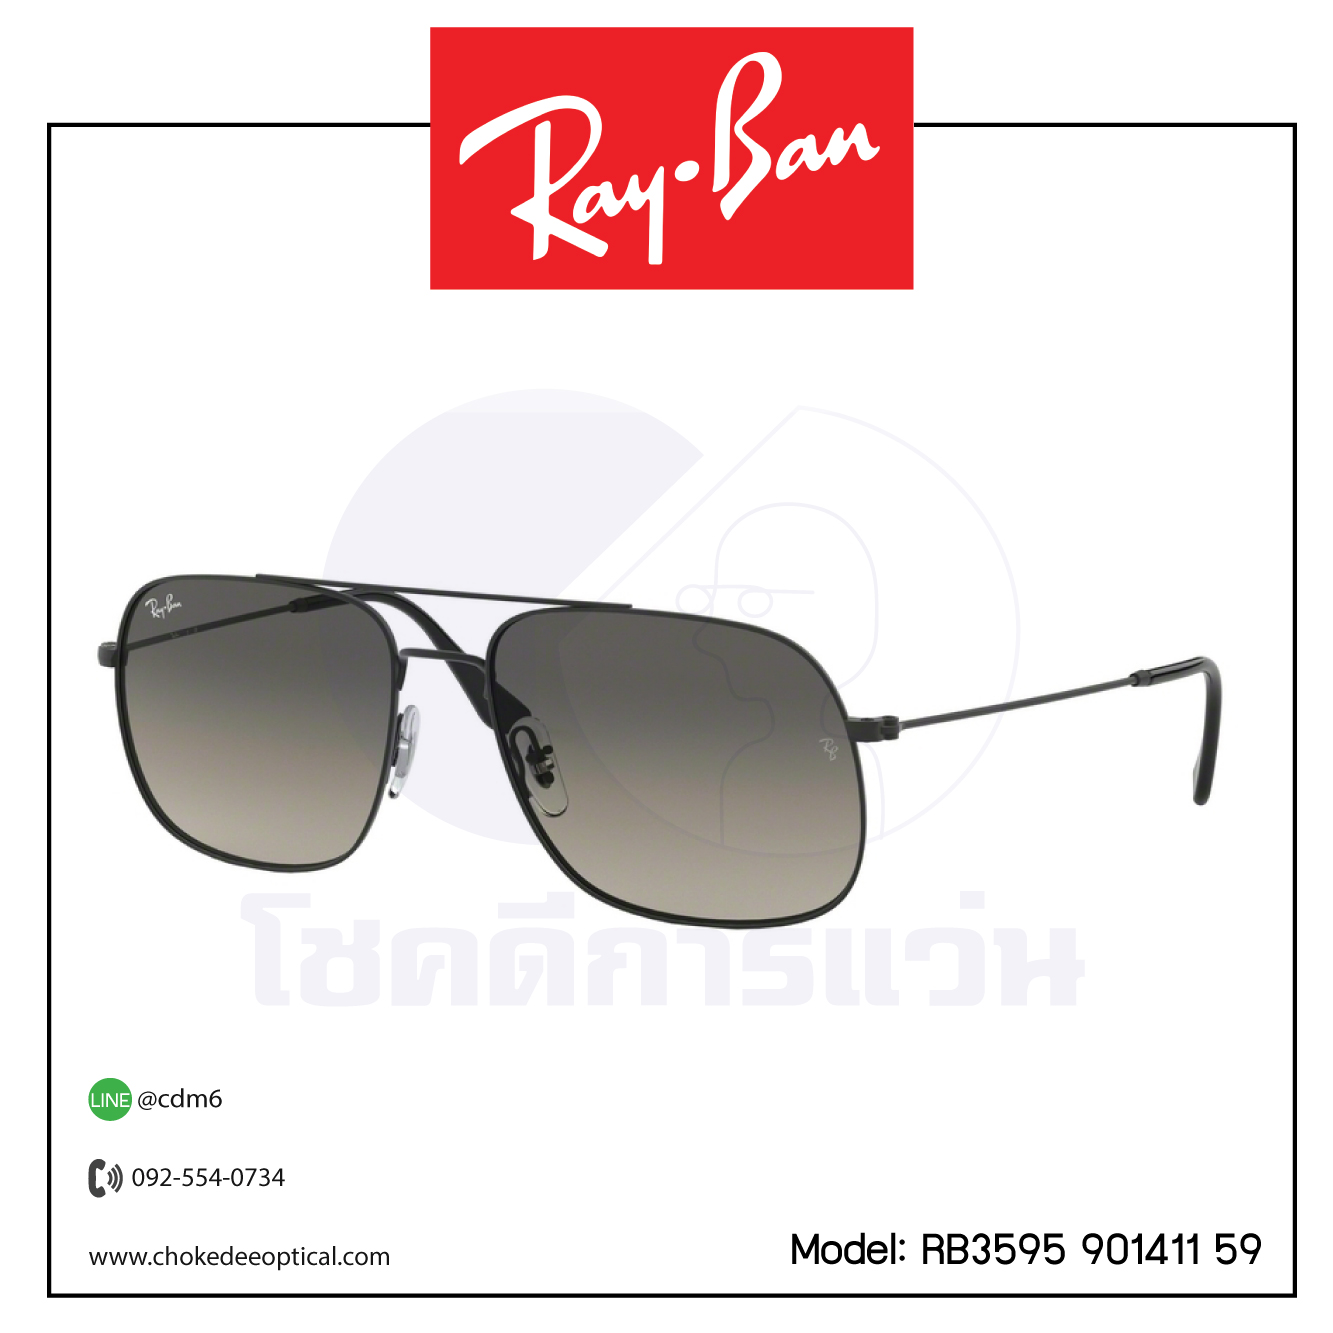 แว่นกันแดด Rayban RB3595 (901313 59/ 901411 59)